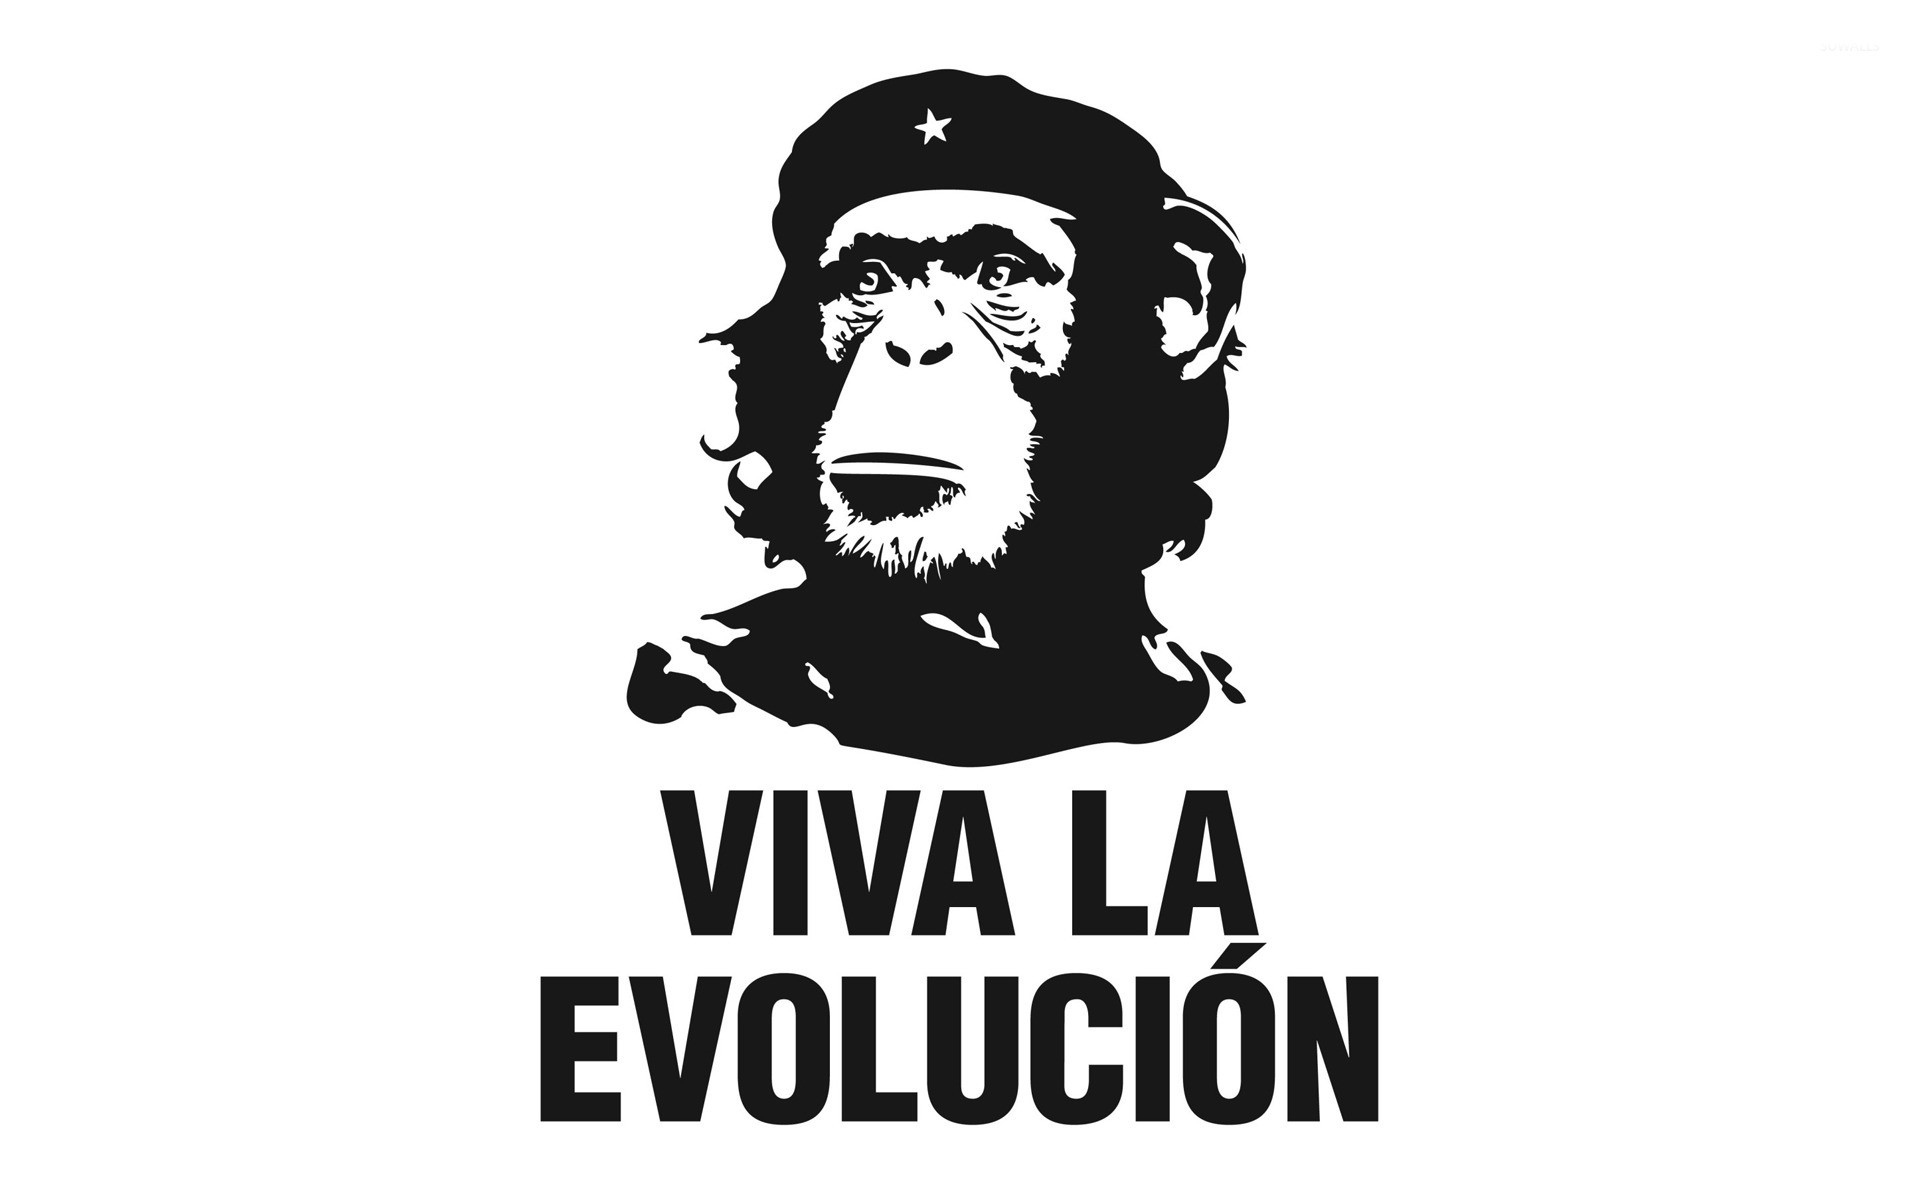 Viva la evolucion wallpaper jpg